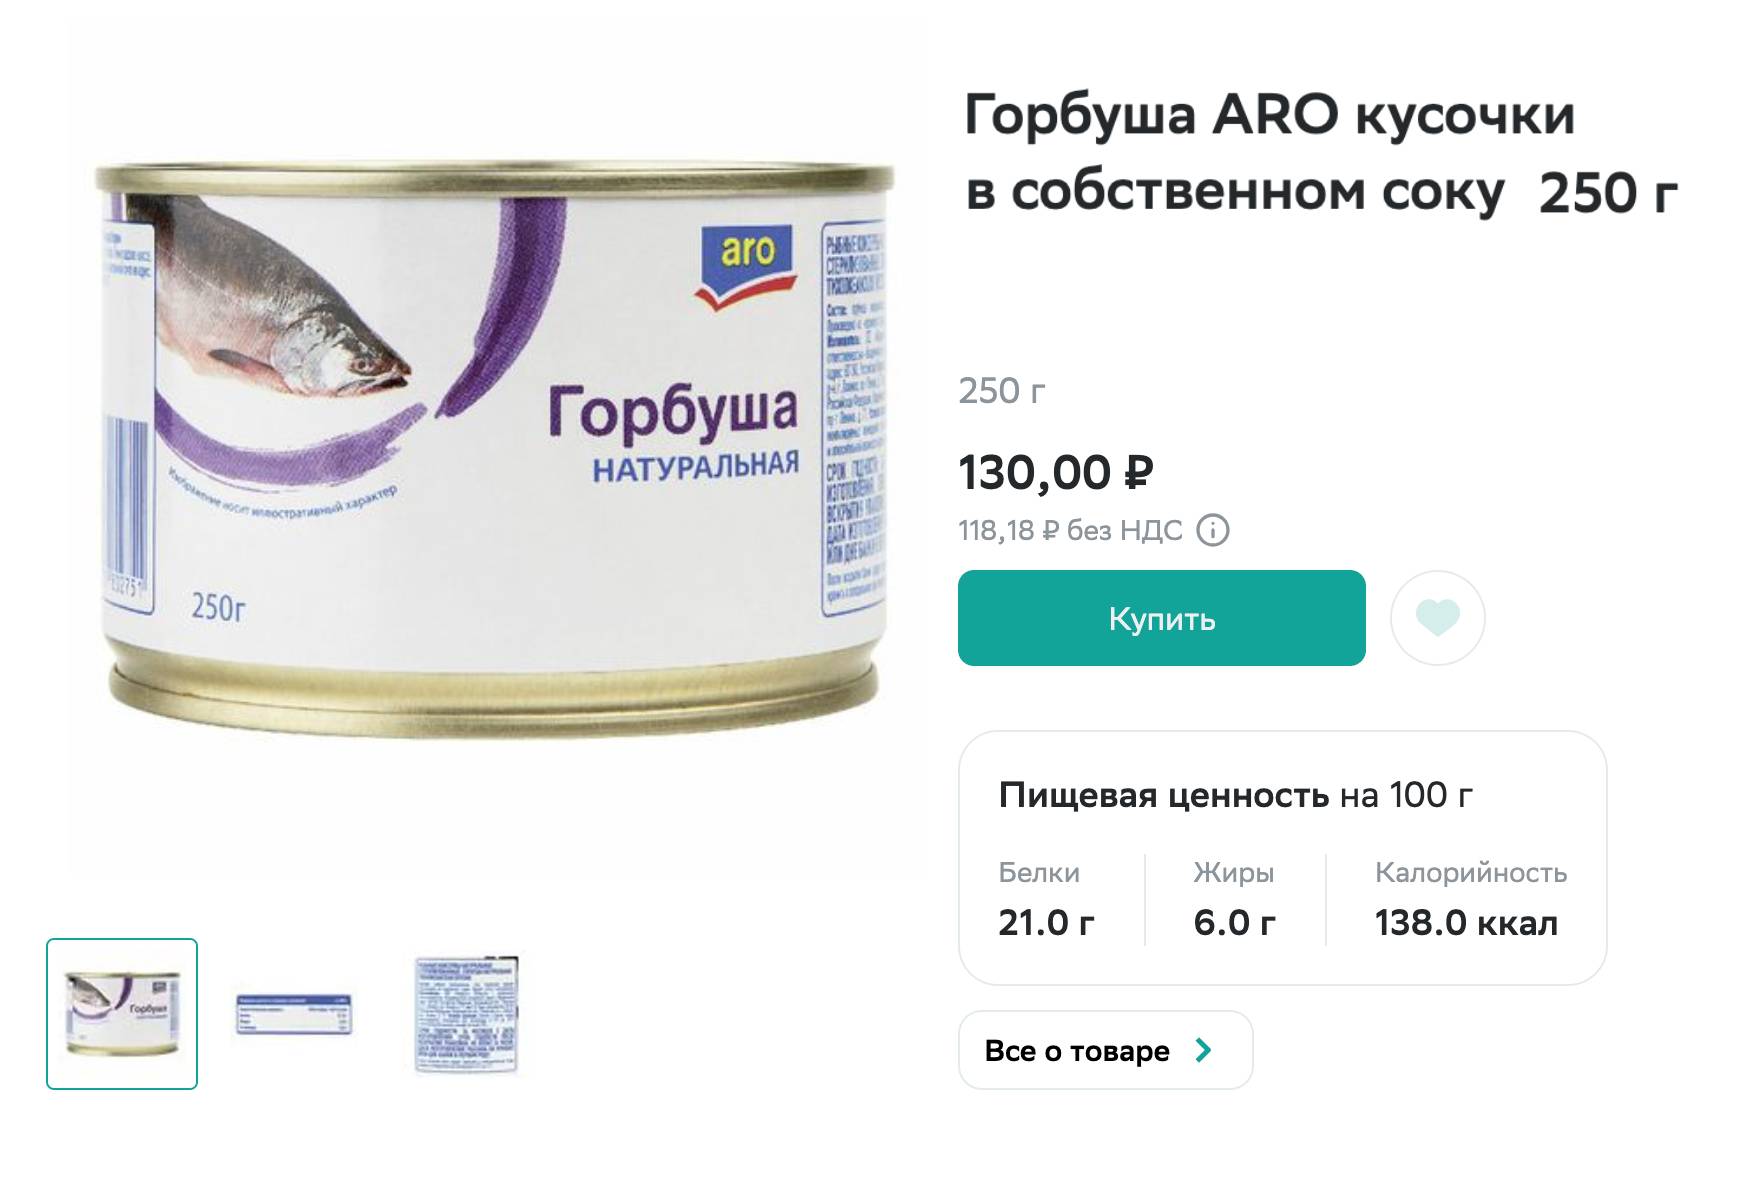 Хороший вариант рыбных консервов: в составе только горбуша и вода. Источник: sbermarket.ru